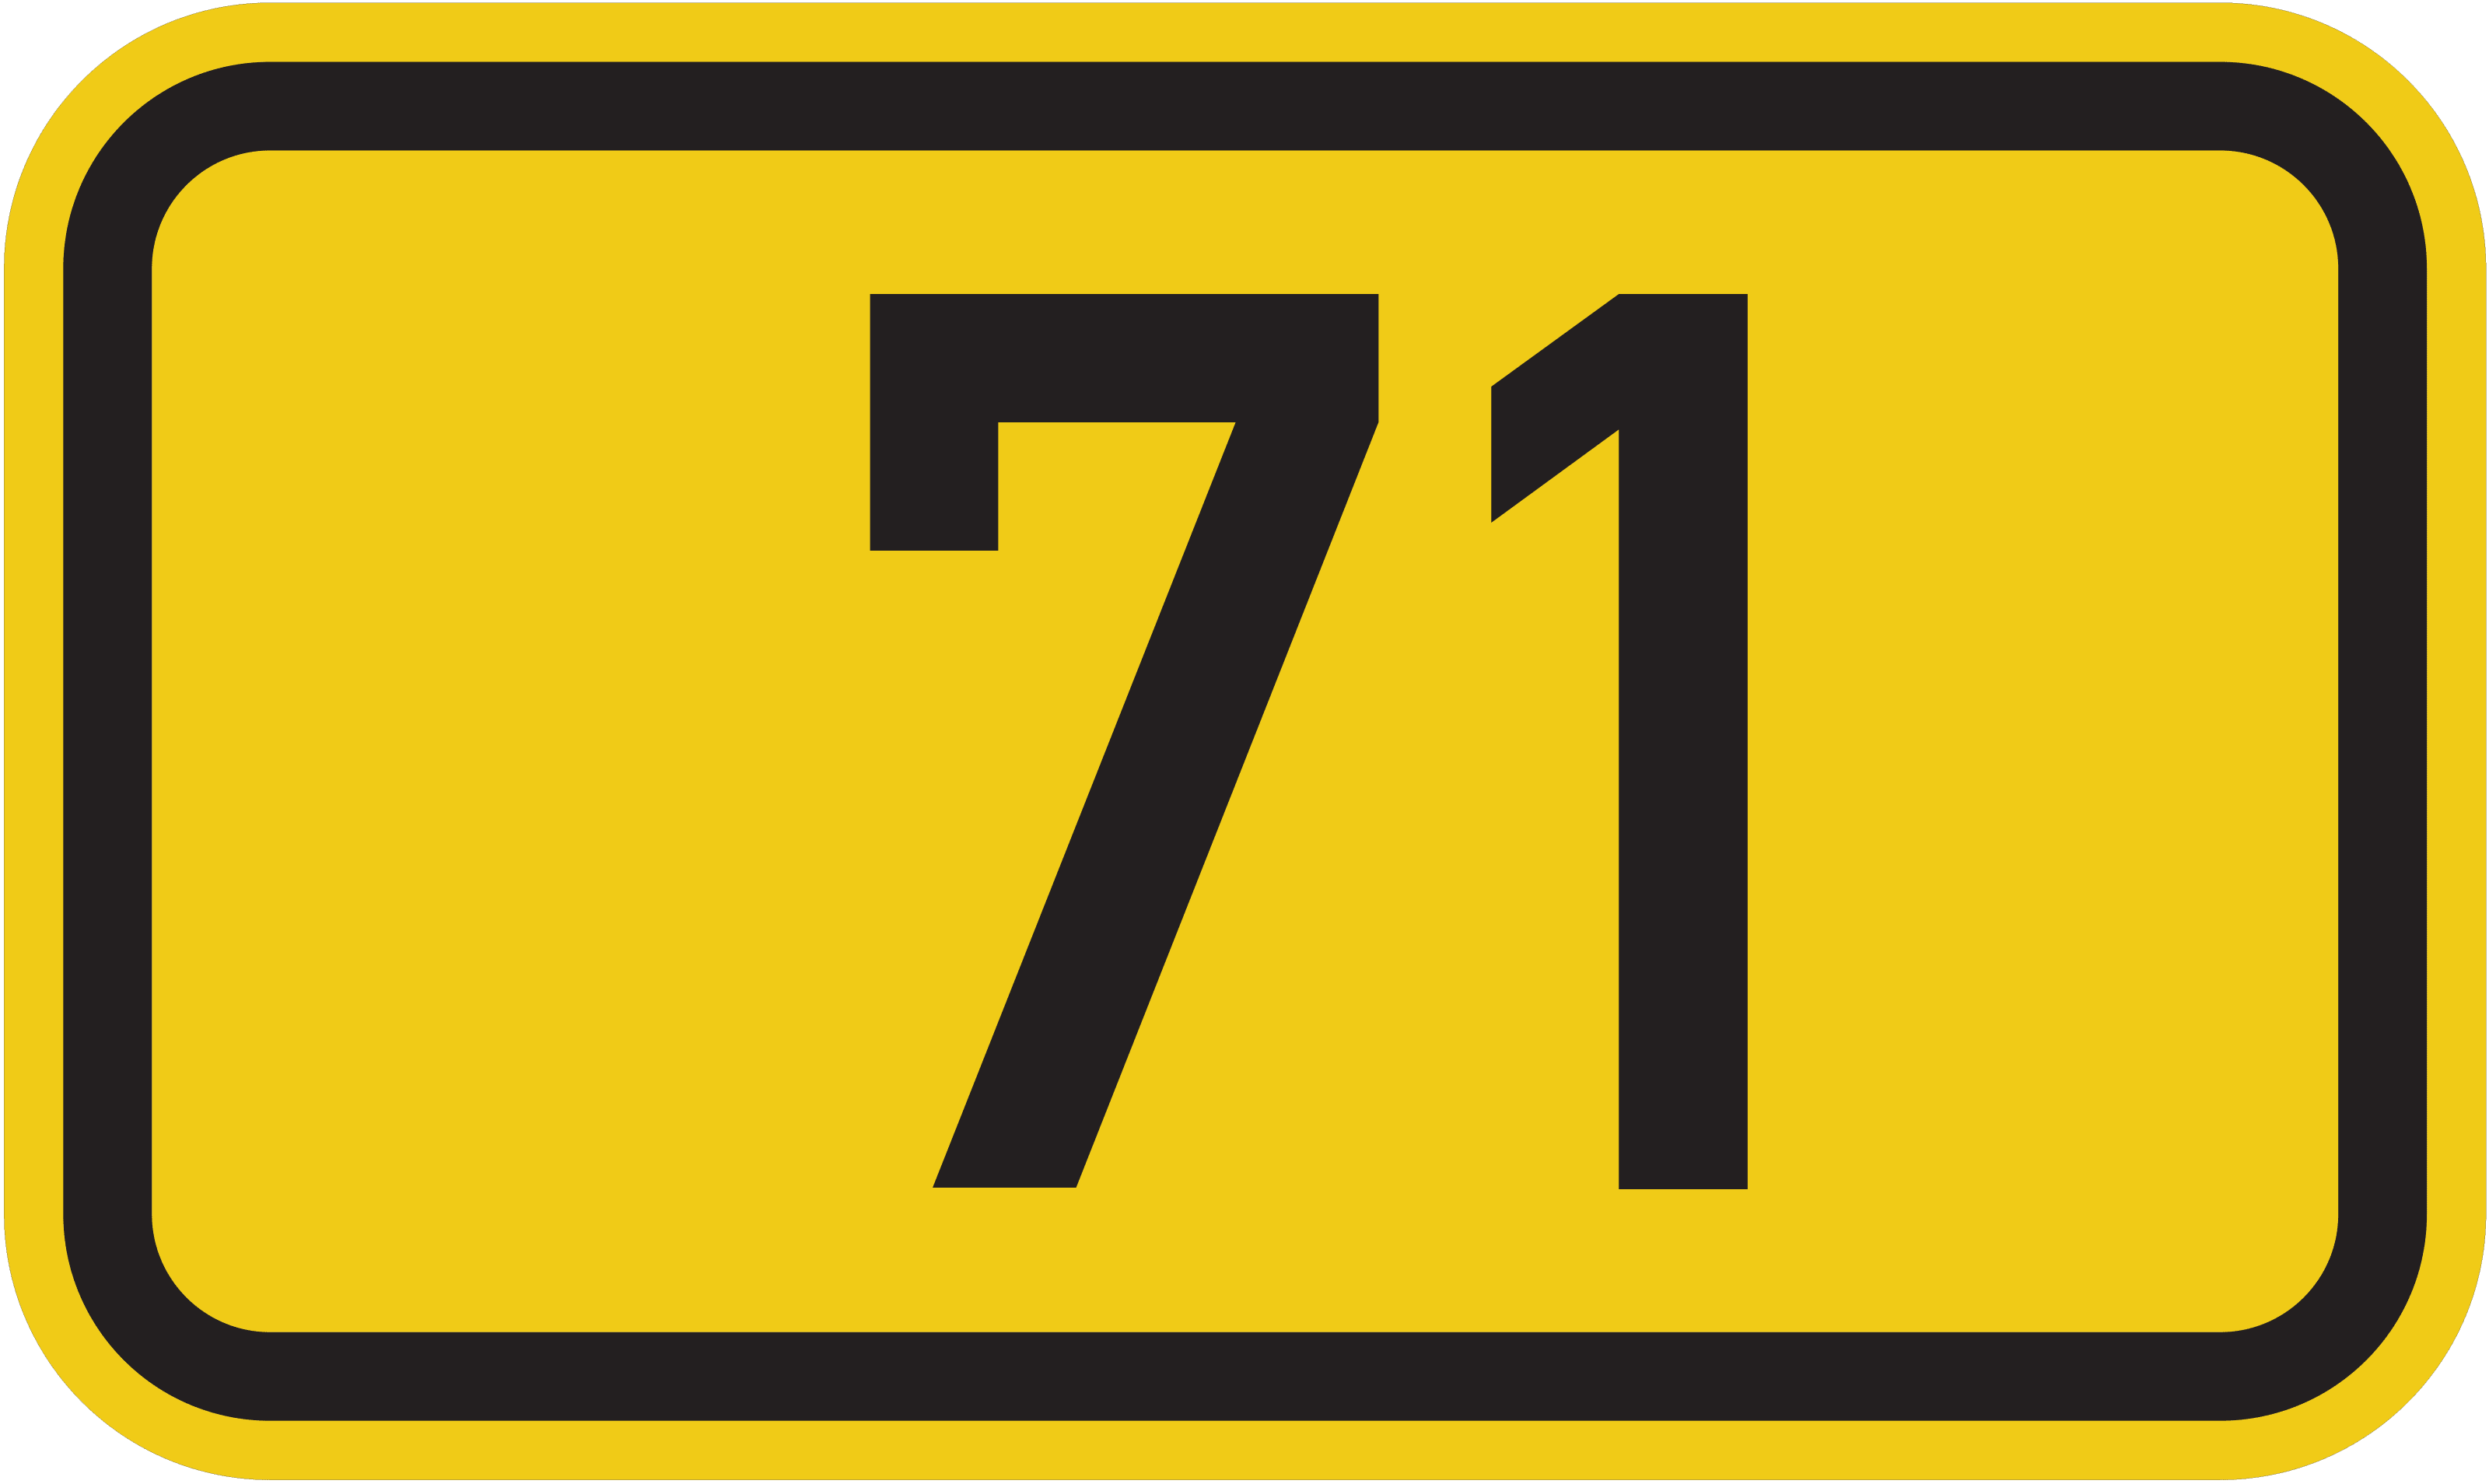 Bundesstraße B 71